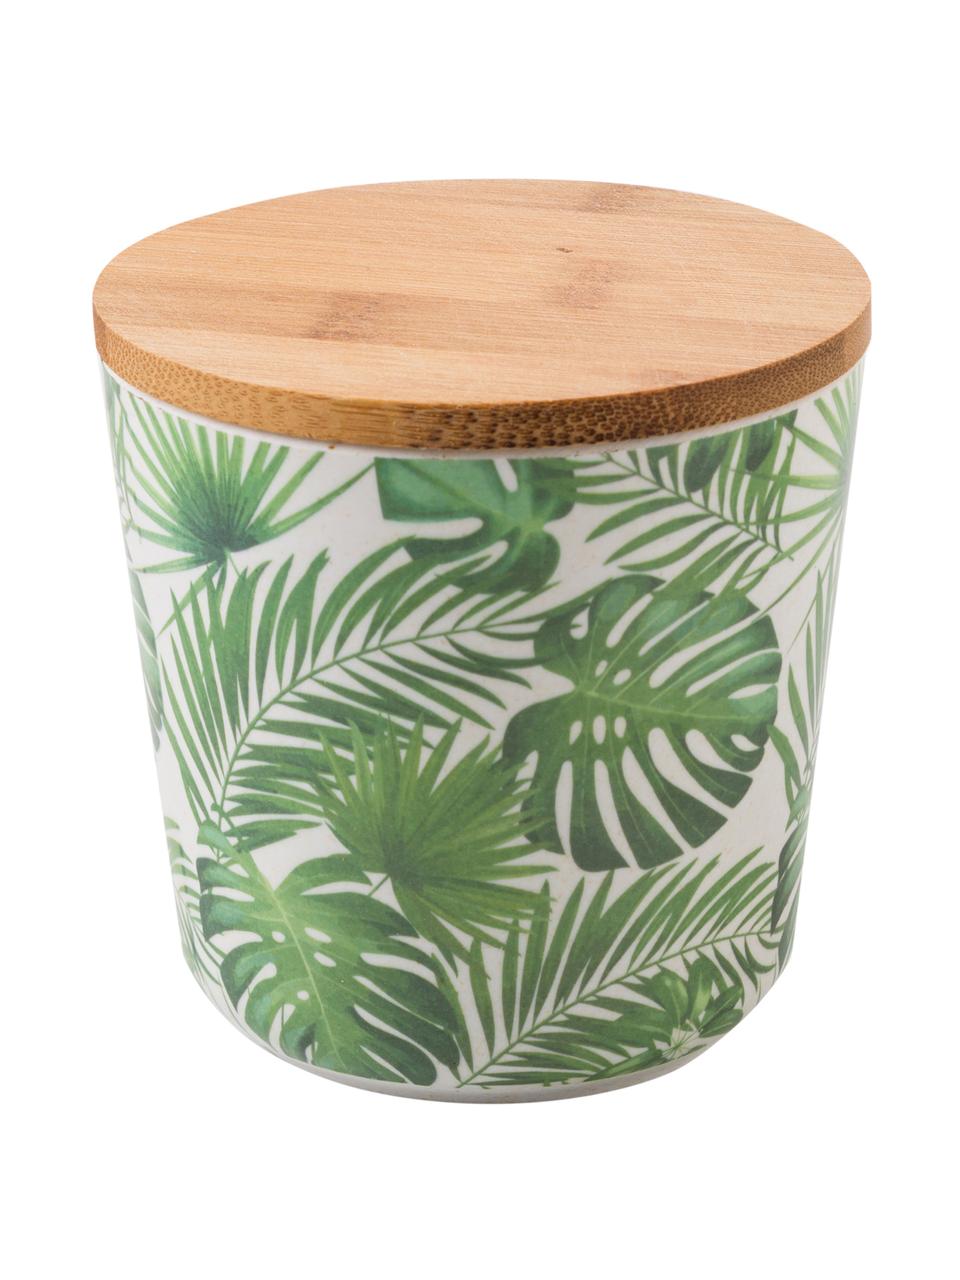 Set scatole Tropical 2 pz, Coperchio: legno di bambù, materiale, Verde, bianco, Ø 11 cm x Alt. 11 cm